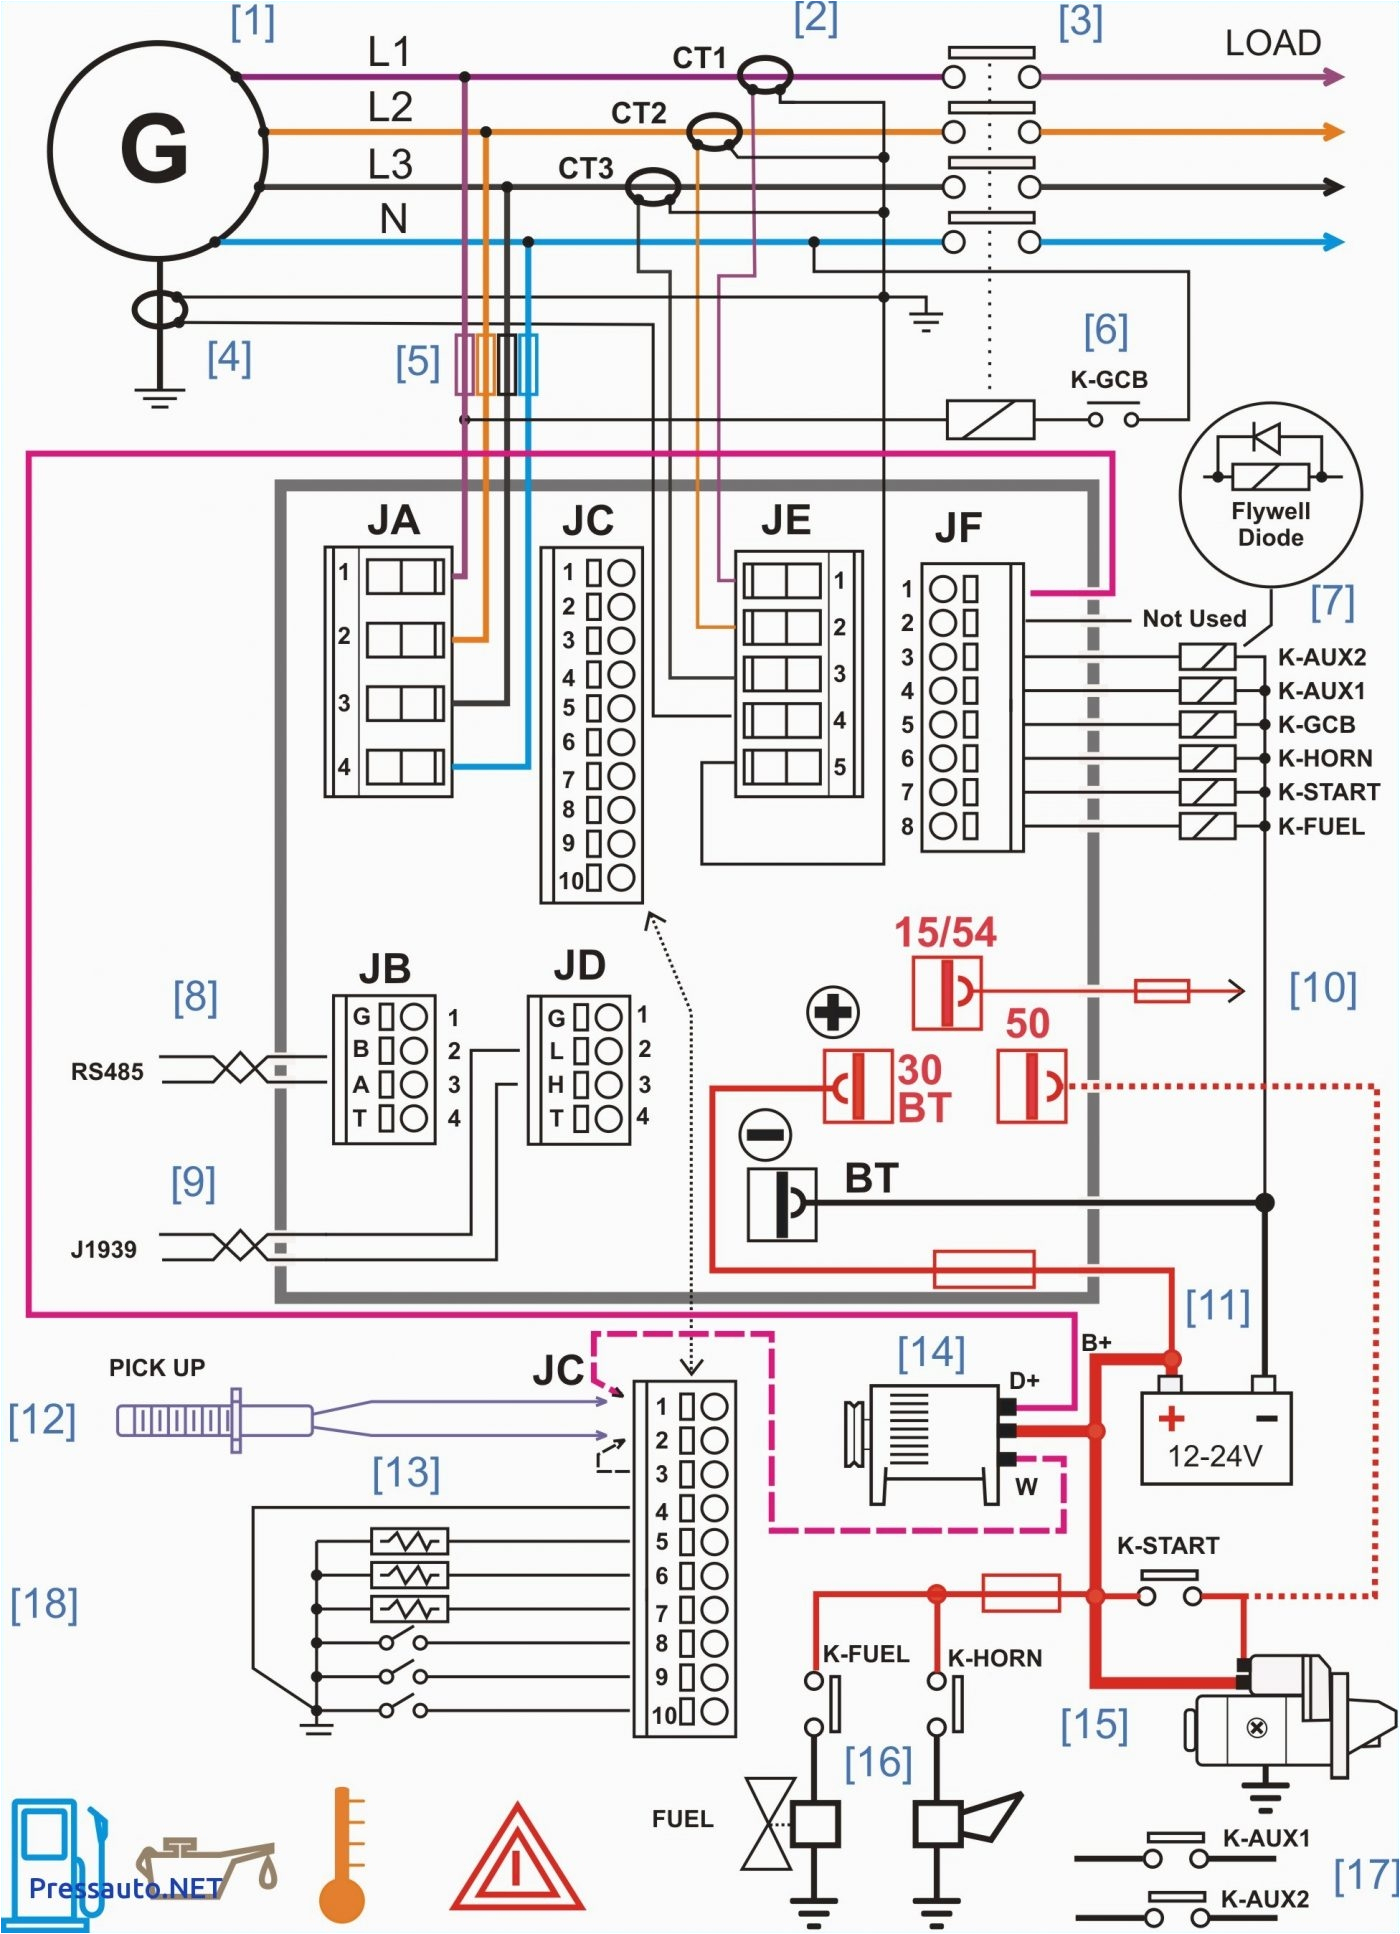 Thermospa Wiring Diagram thermospa Wiring Diagram Free Wiring Diagram